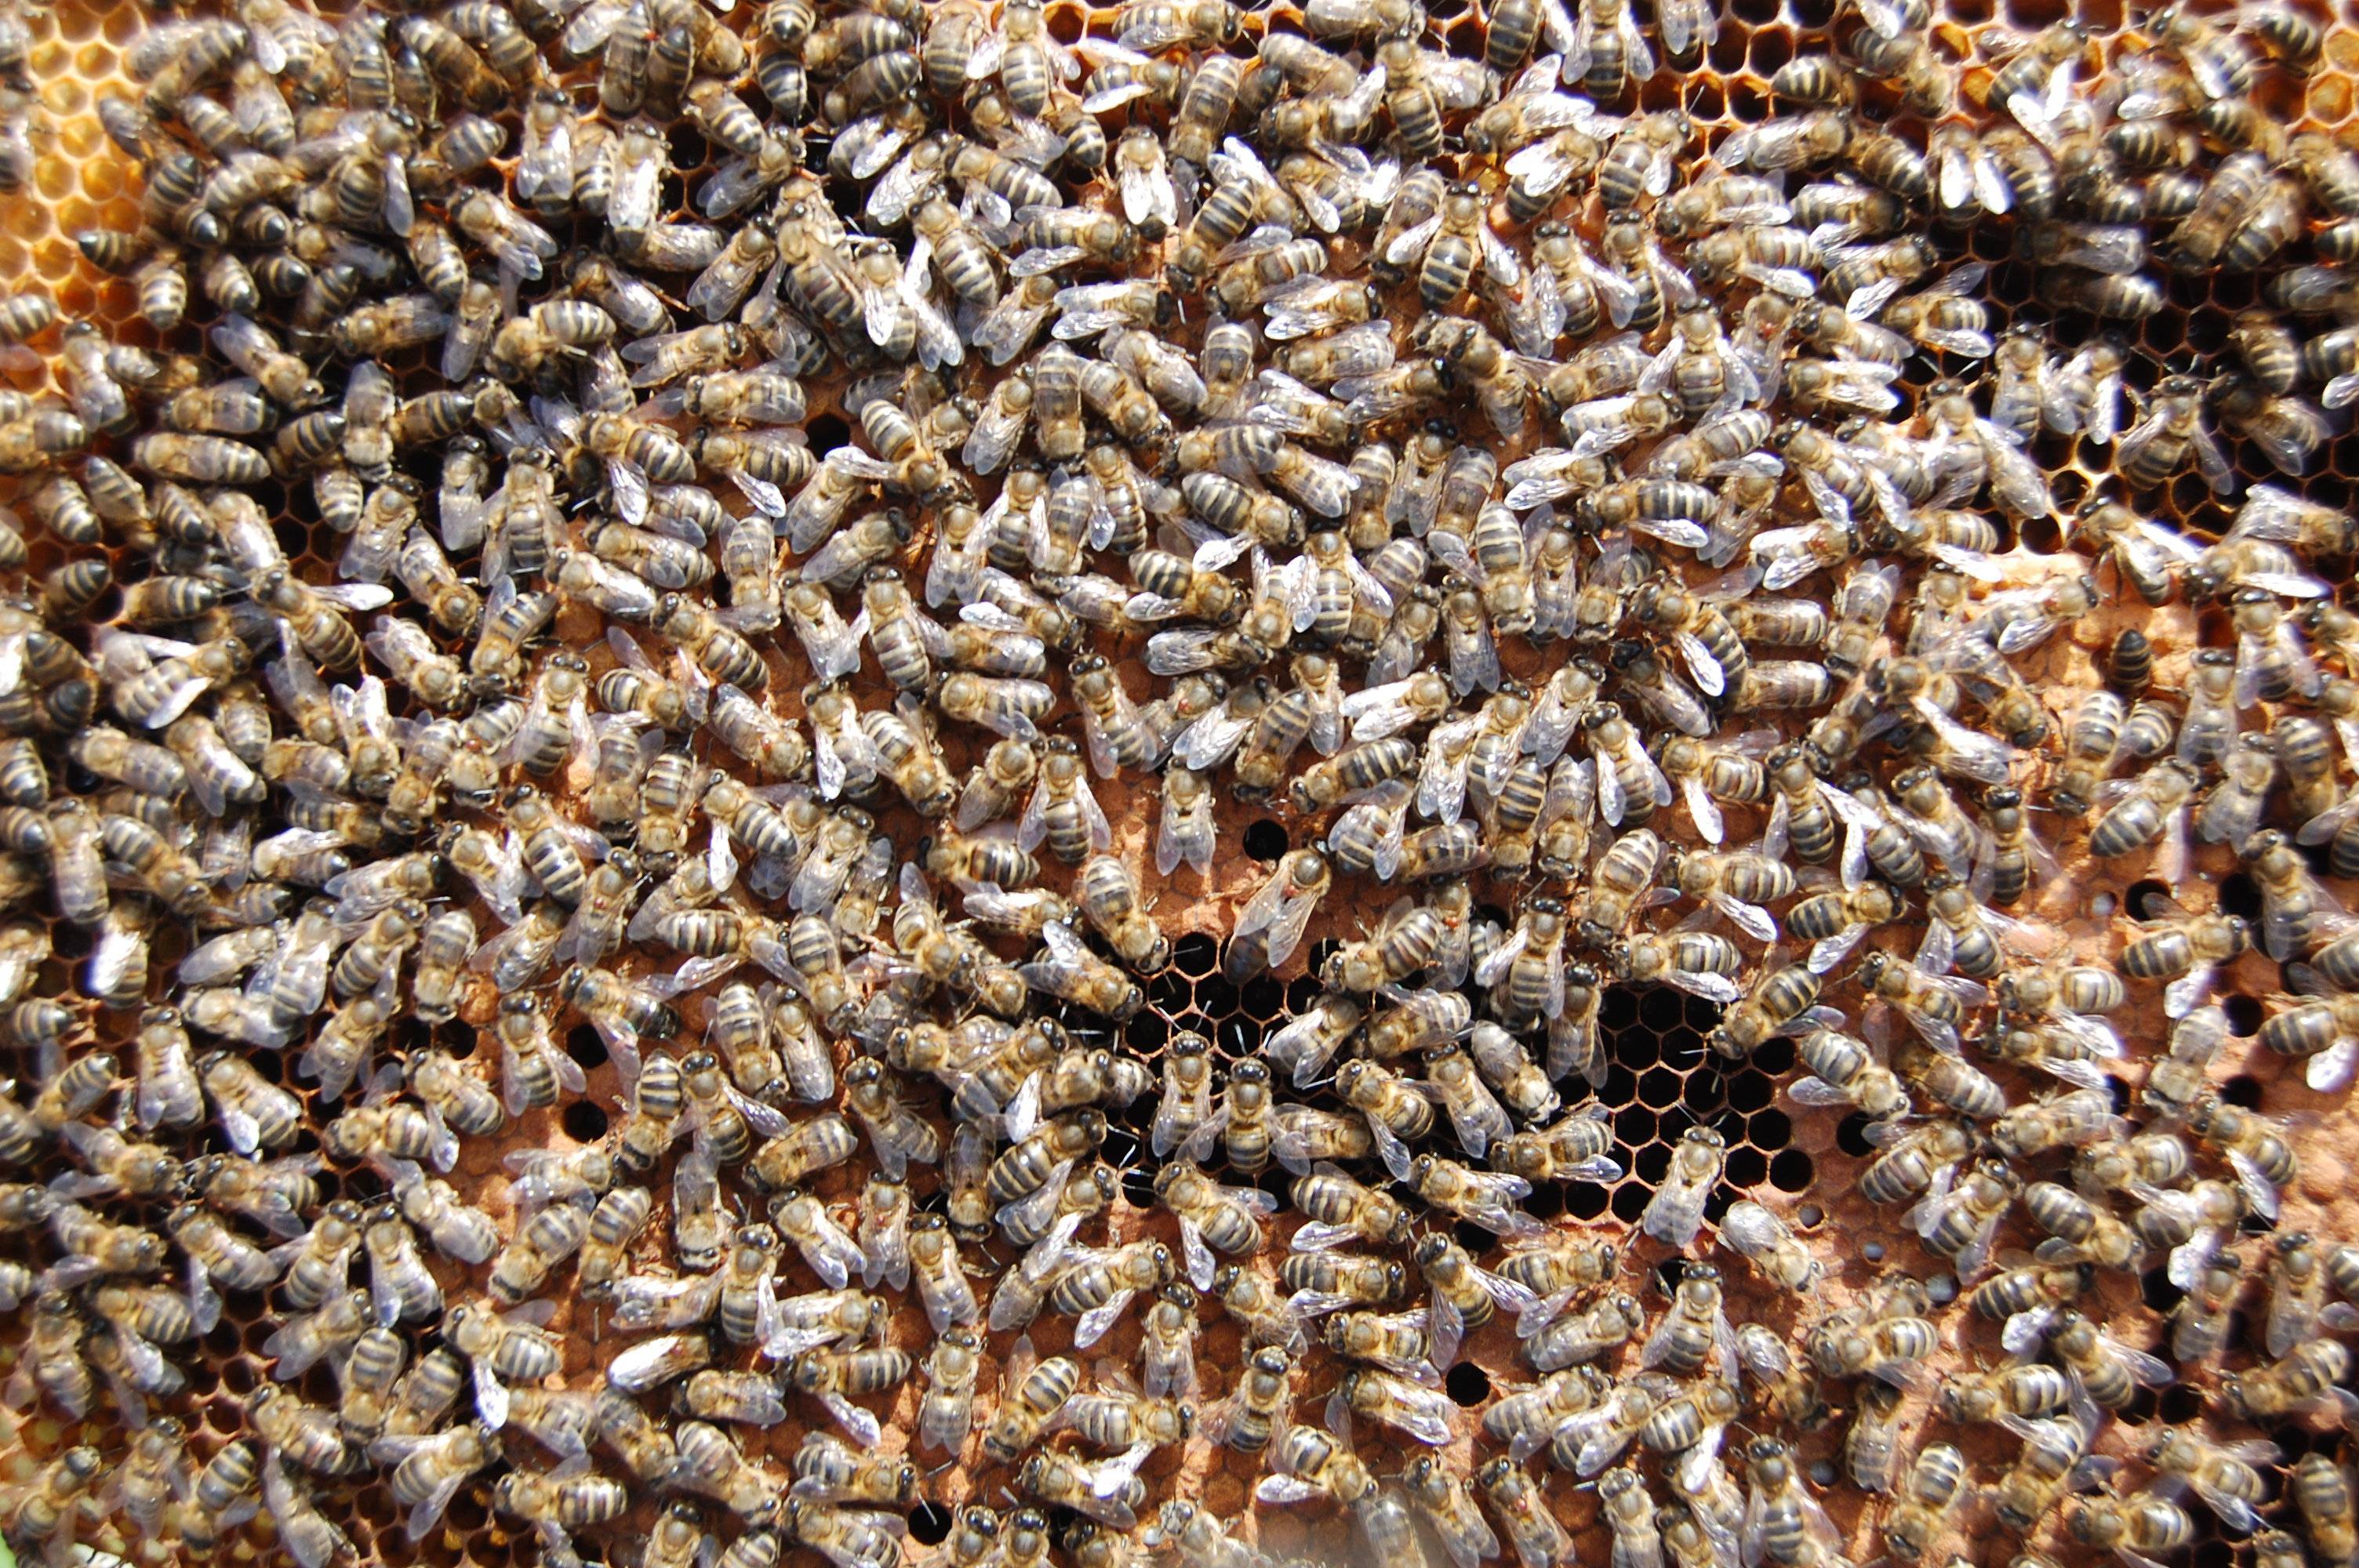 К чему снятся пчелы - значение сна пчелы по соннику